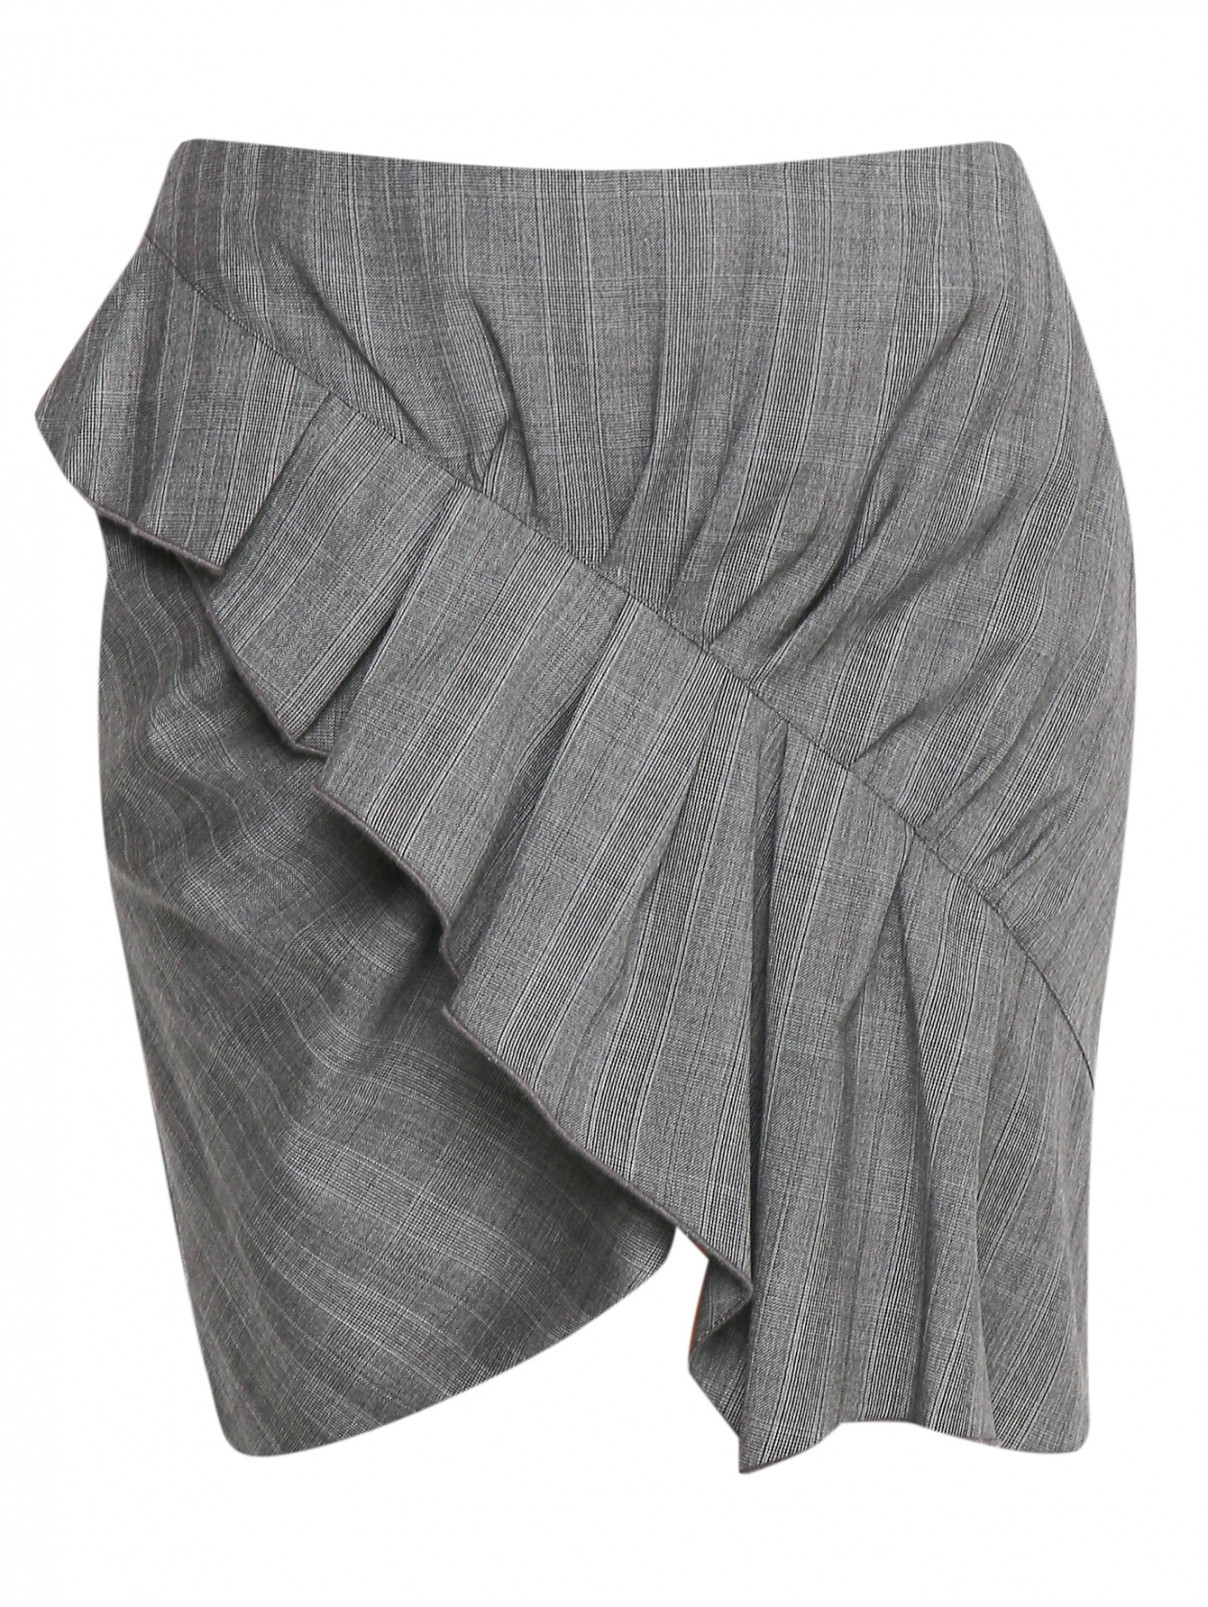 Юбка-мини из шерсти с драпировкой Isabel Marant  –  Общий вид  – Цвет:  Серый